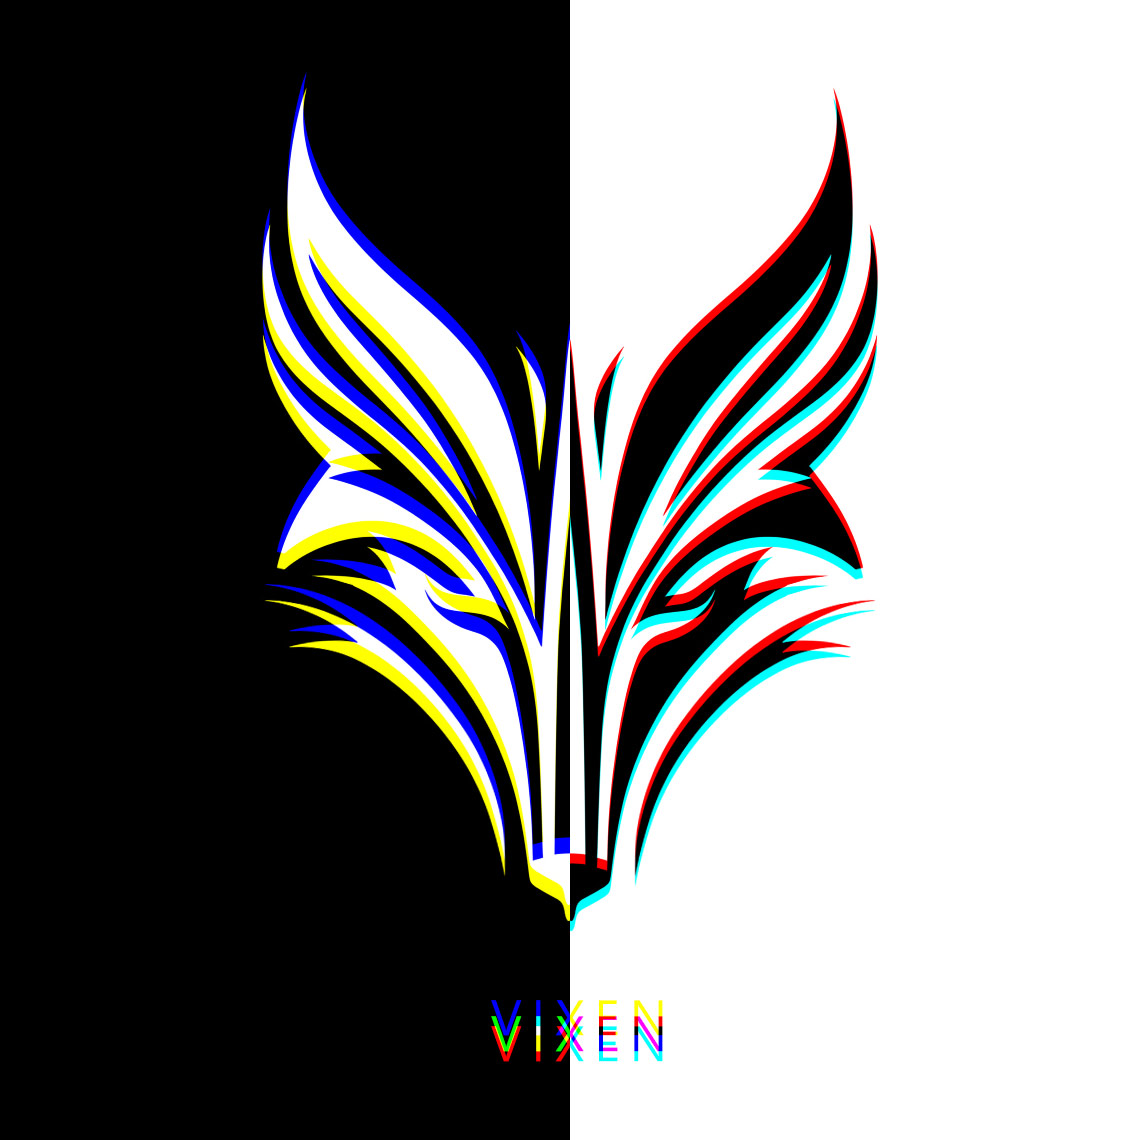 VIXEN: The Shifty Fox